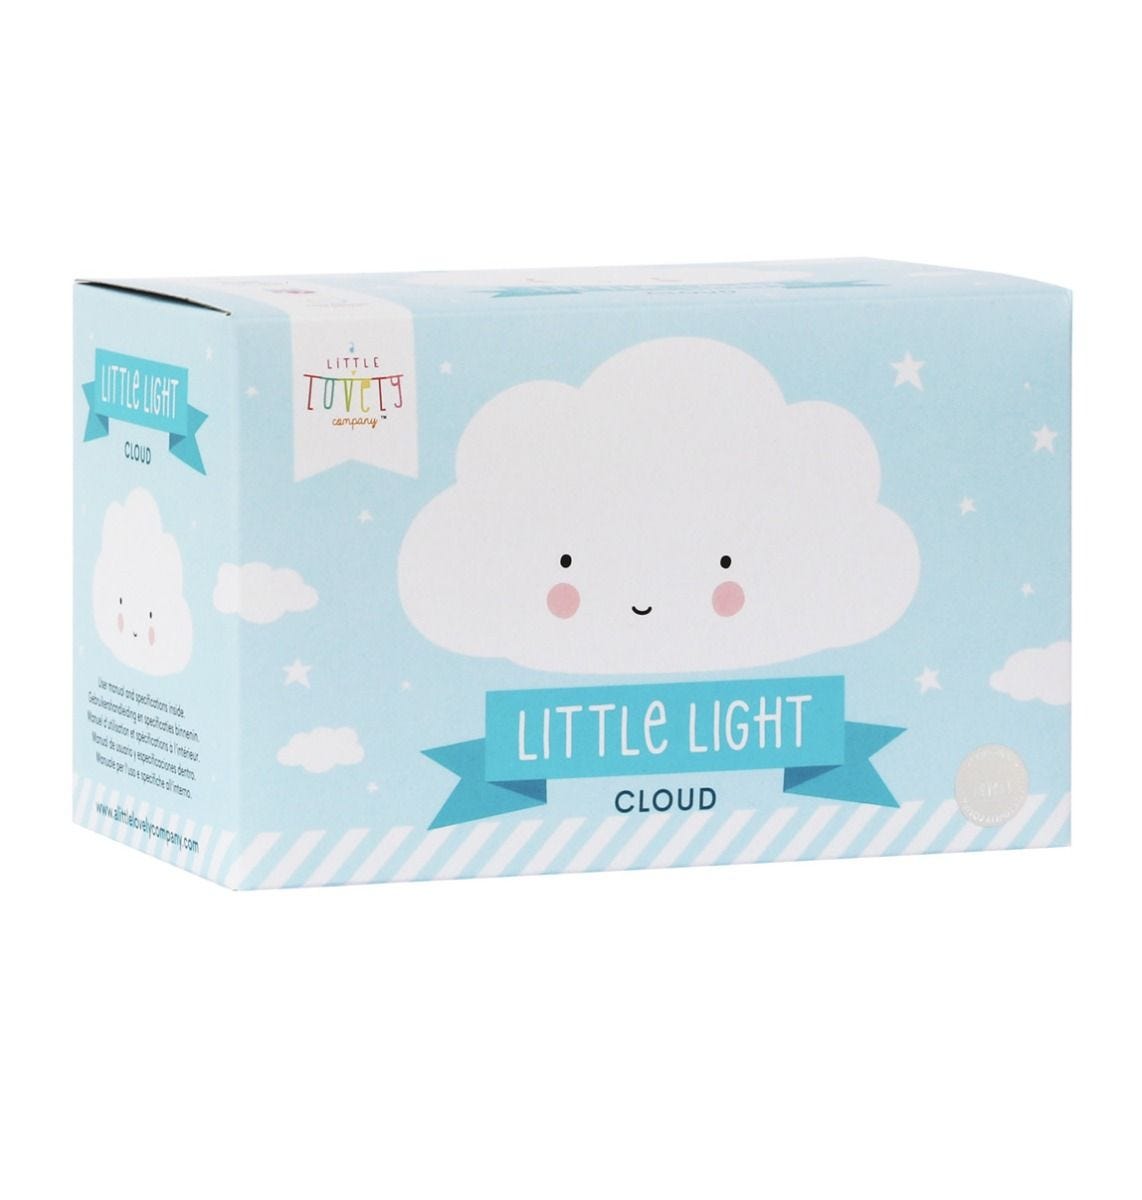 Mini cloud light white